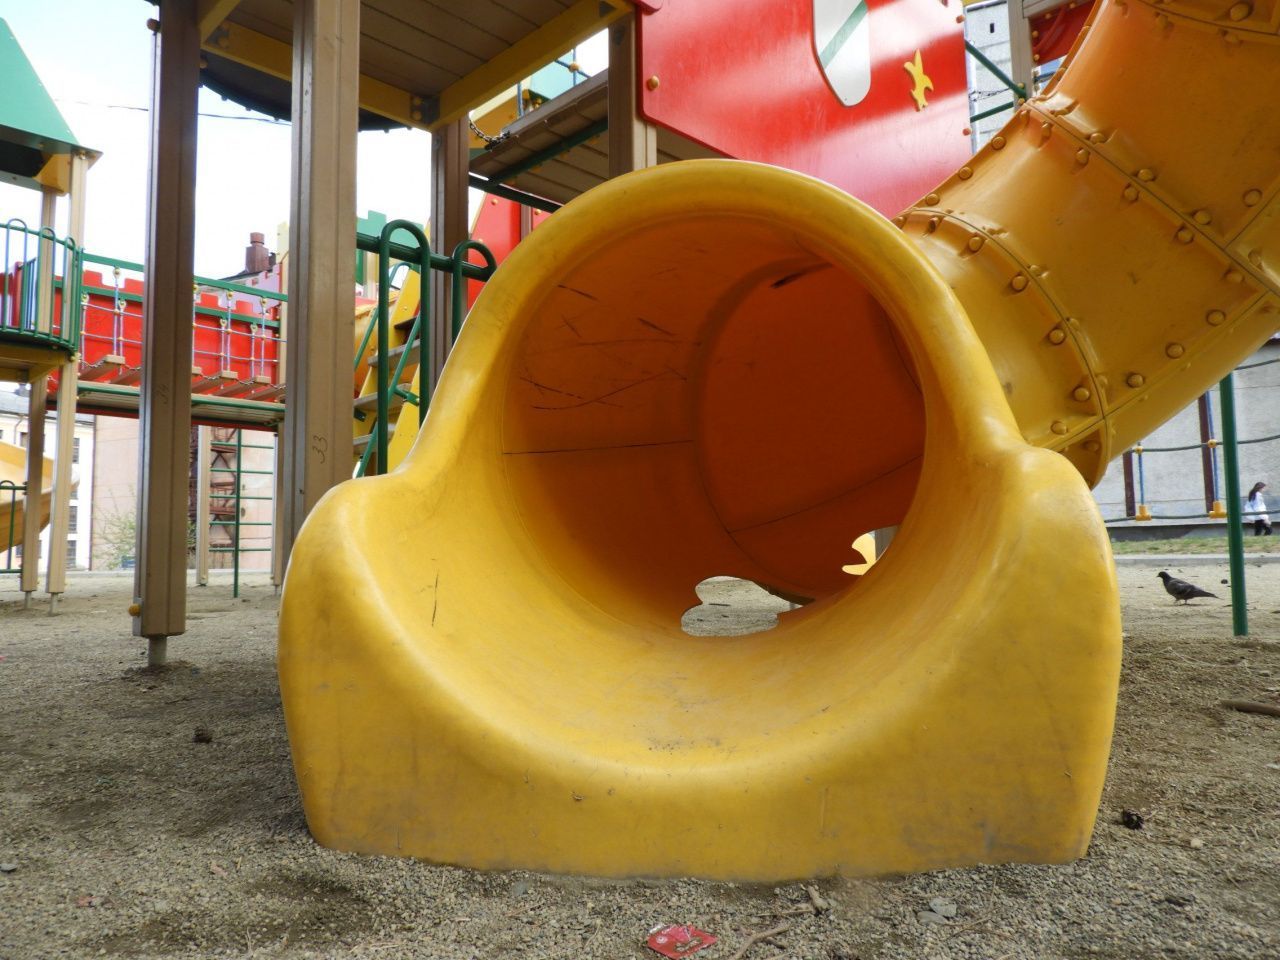 В Карпинске отремонтируют детские площадки, в том числе дырявые горки возле музея